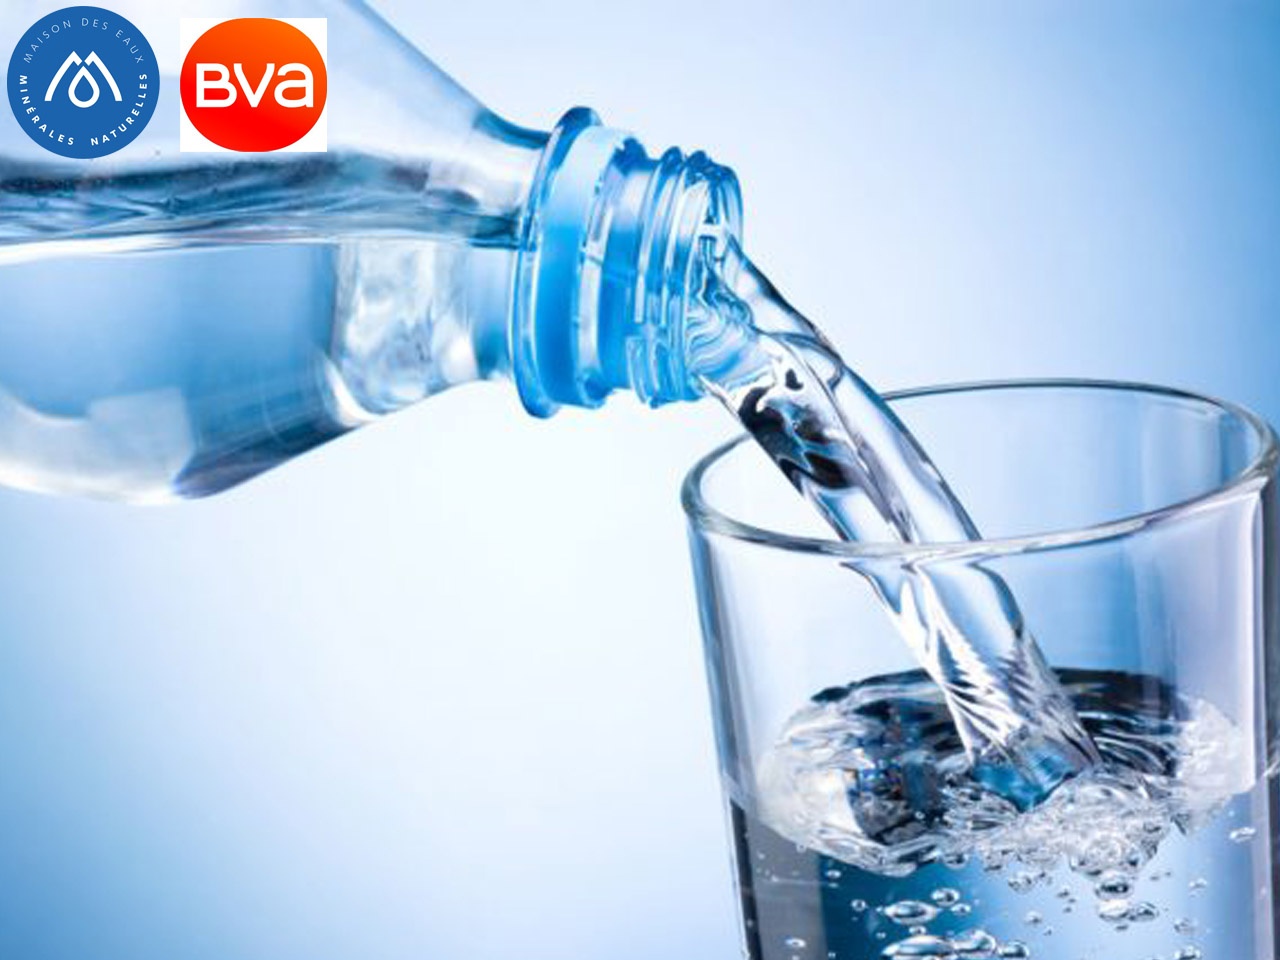 Sondage BVA : l’eau minérale naturelle, un produit du terroir apprécié des Français pour son bon goût